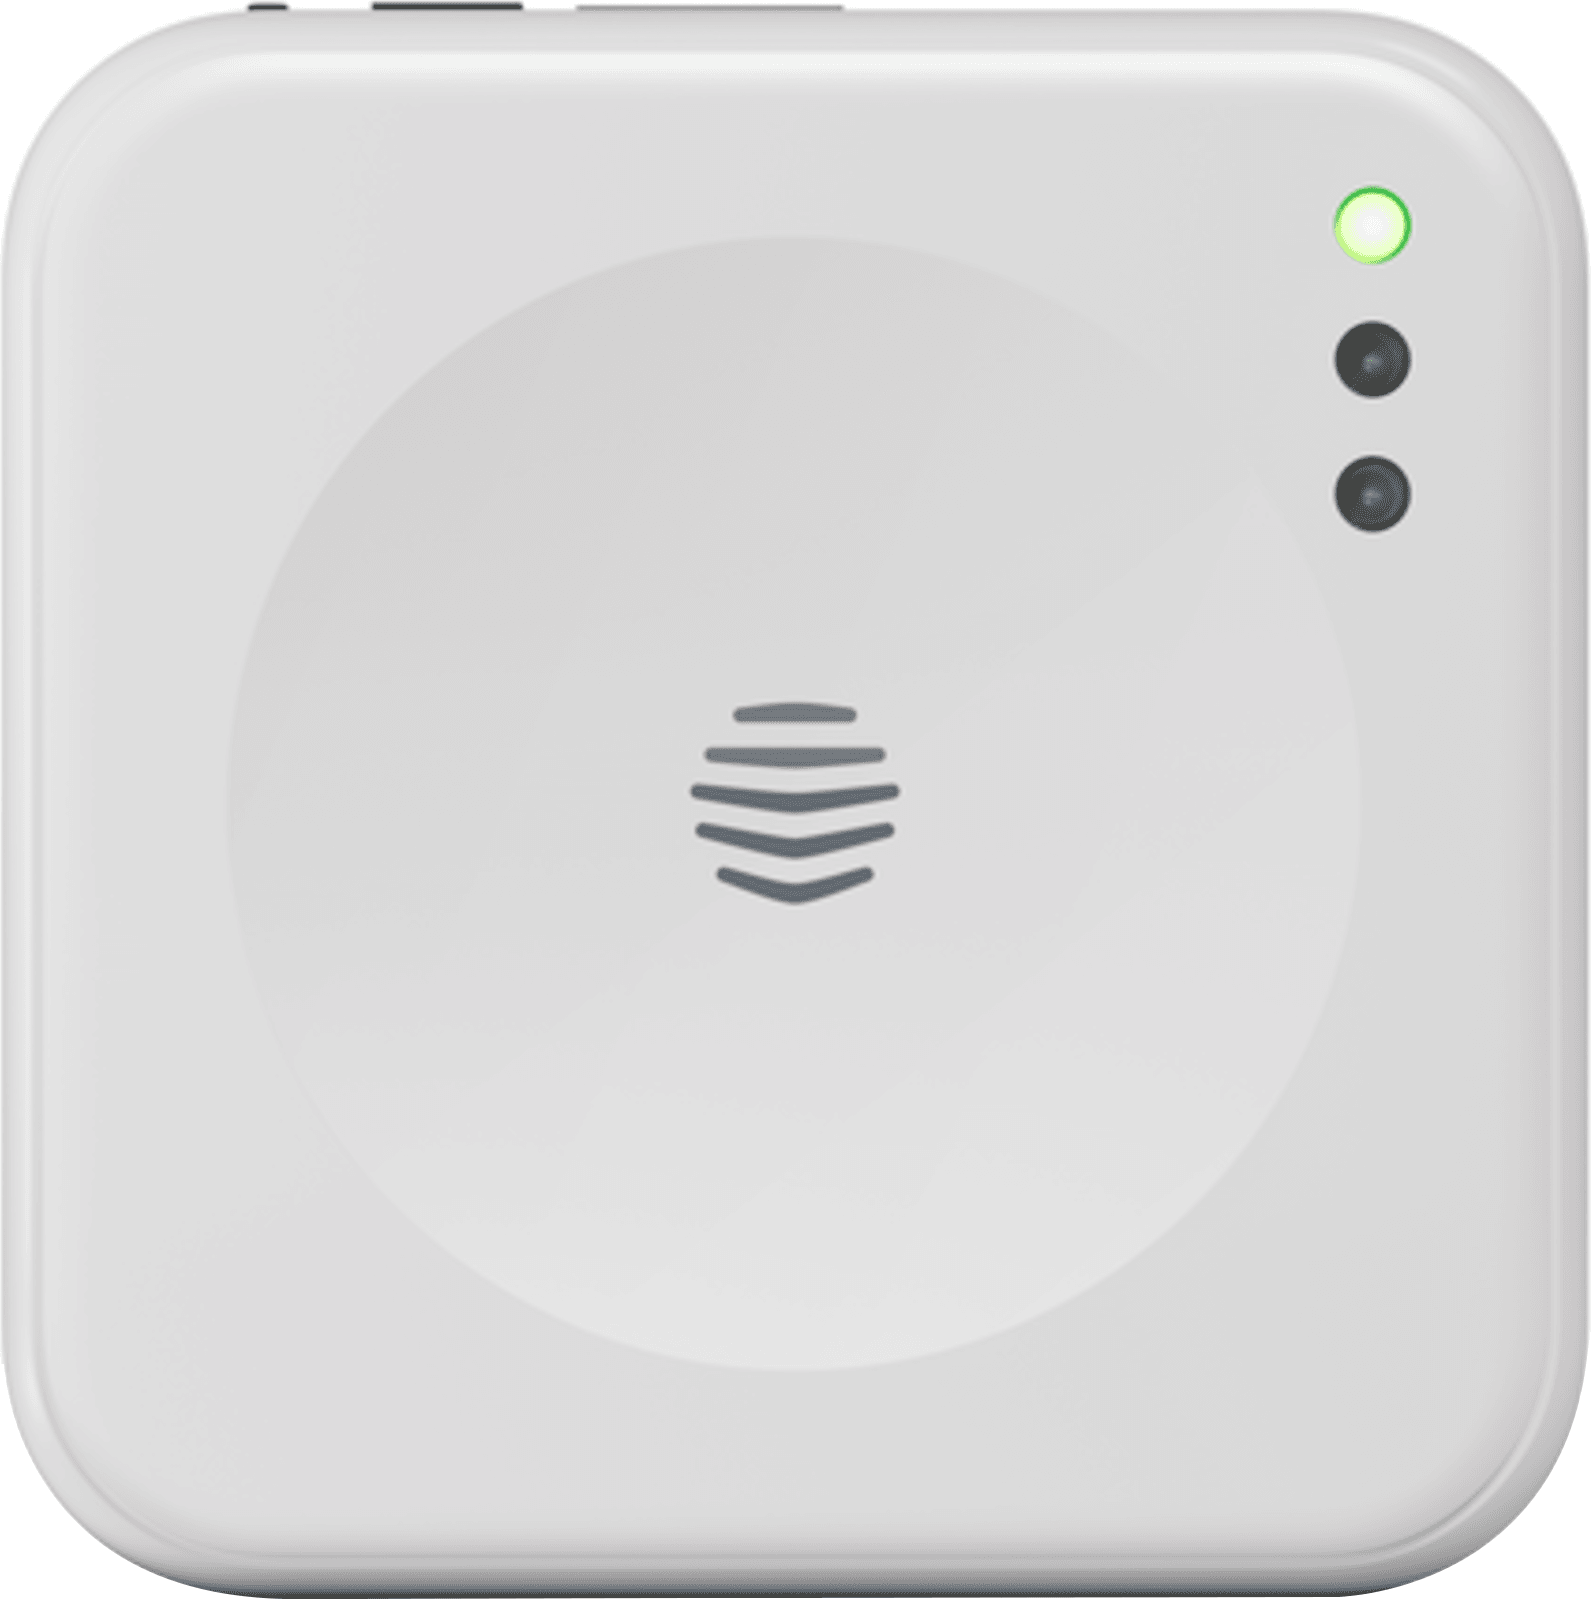 Hive Hub Nano 25 Smart Thermostat - White White